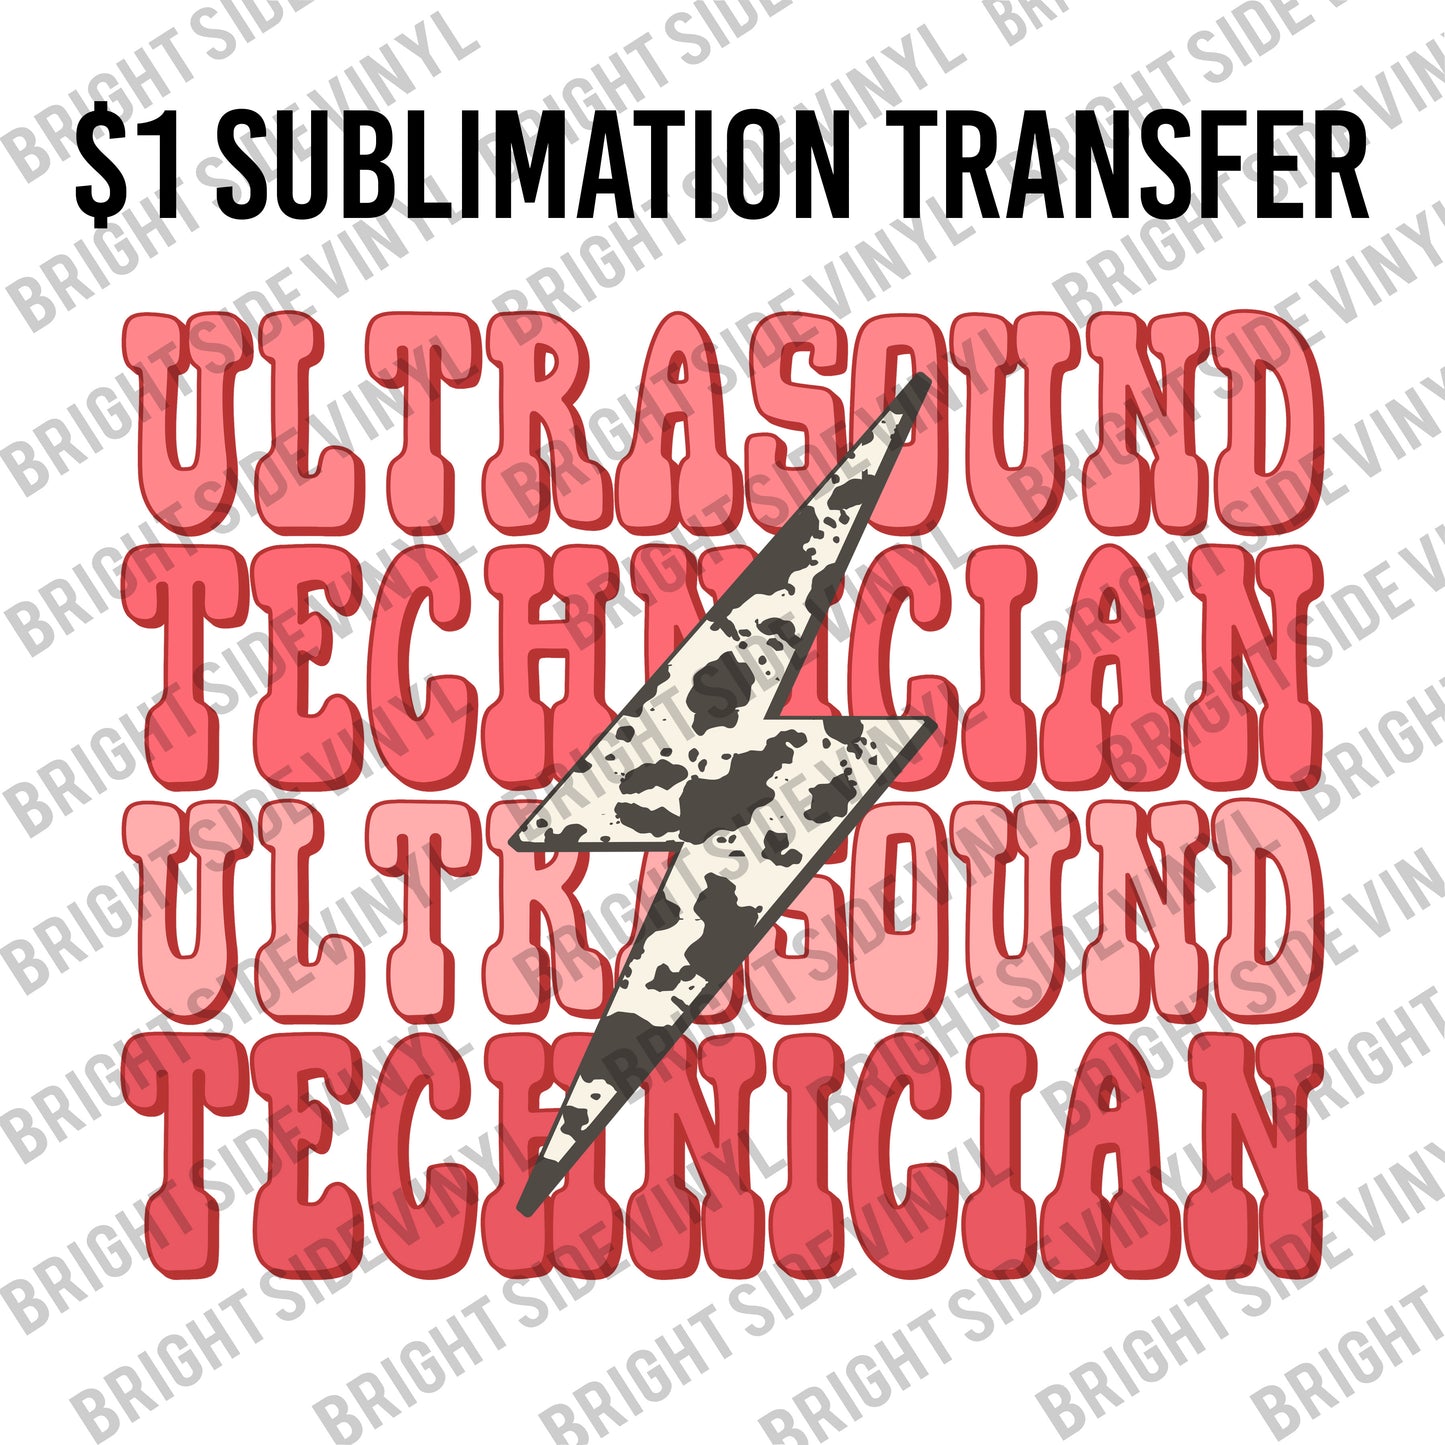 Ultrasound Tech 2 Live Sale